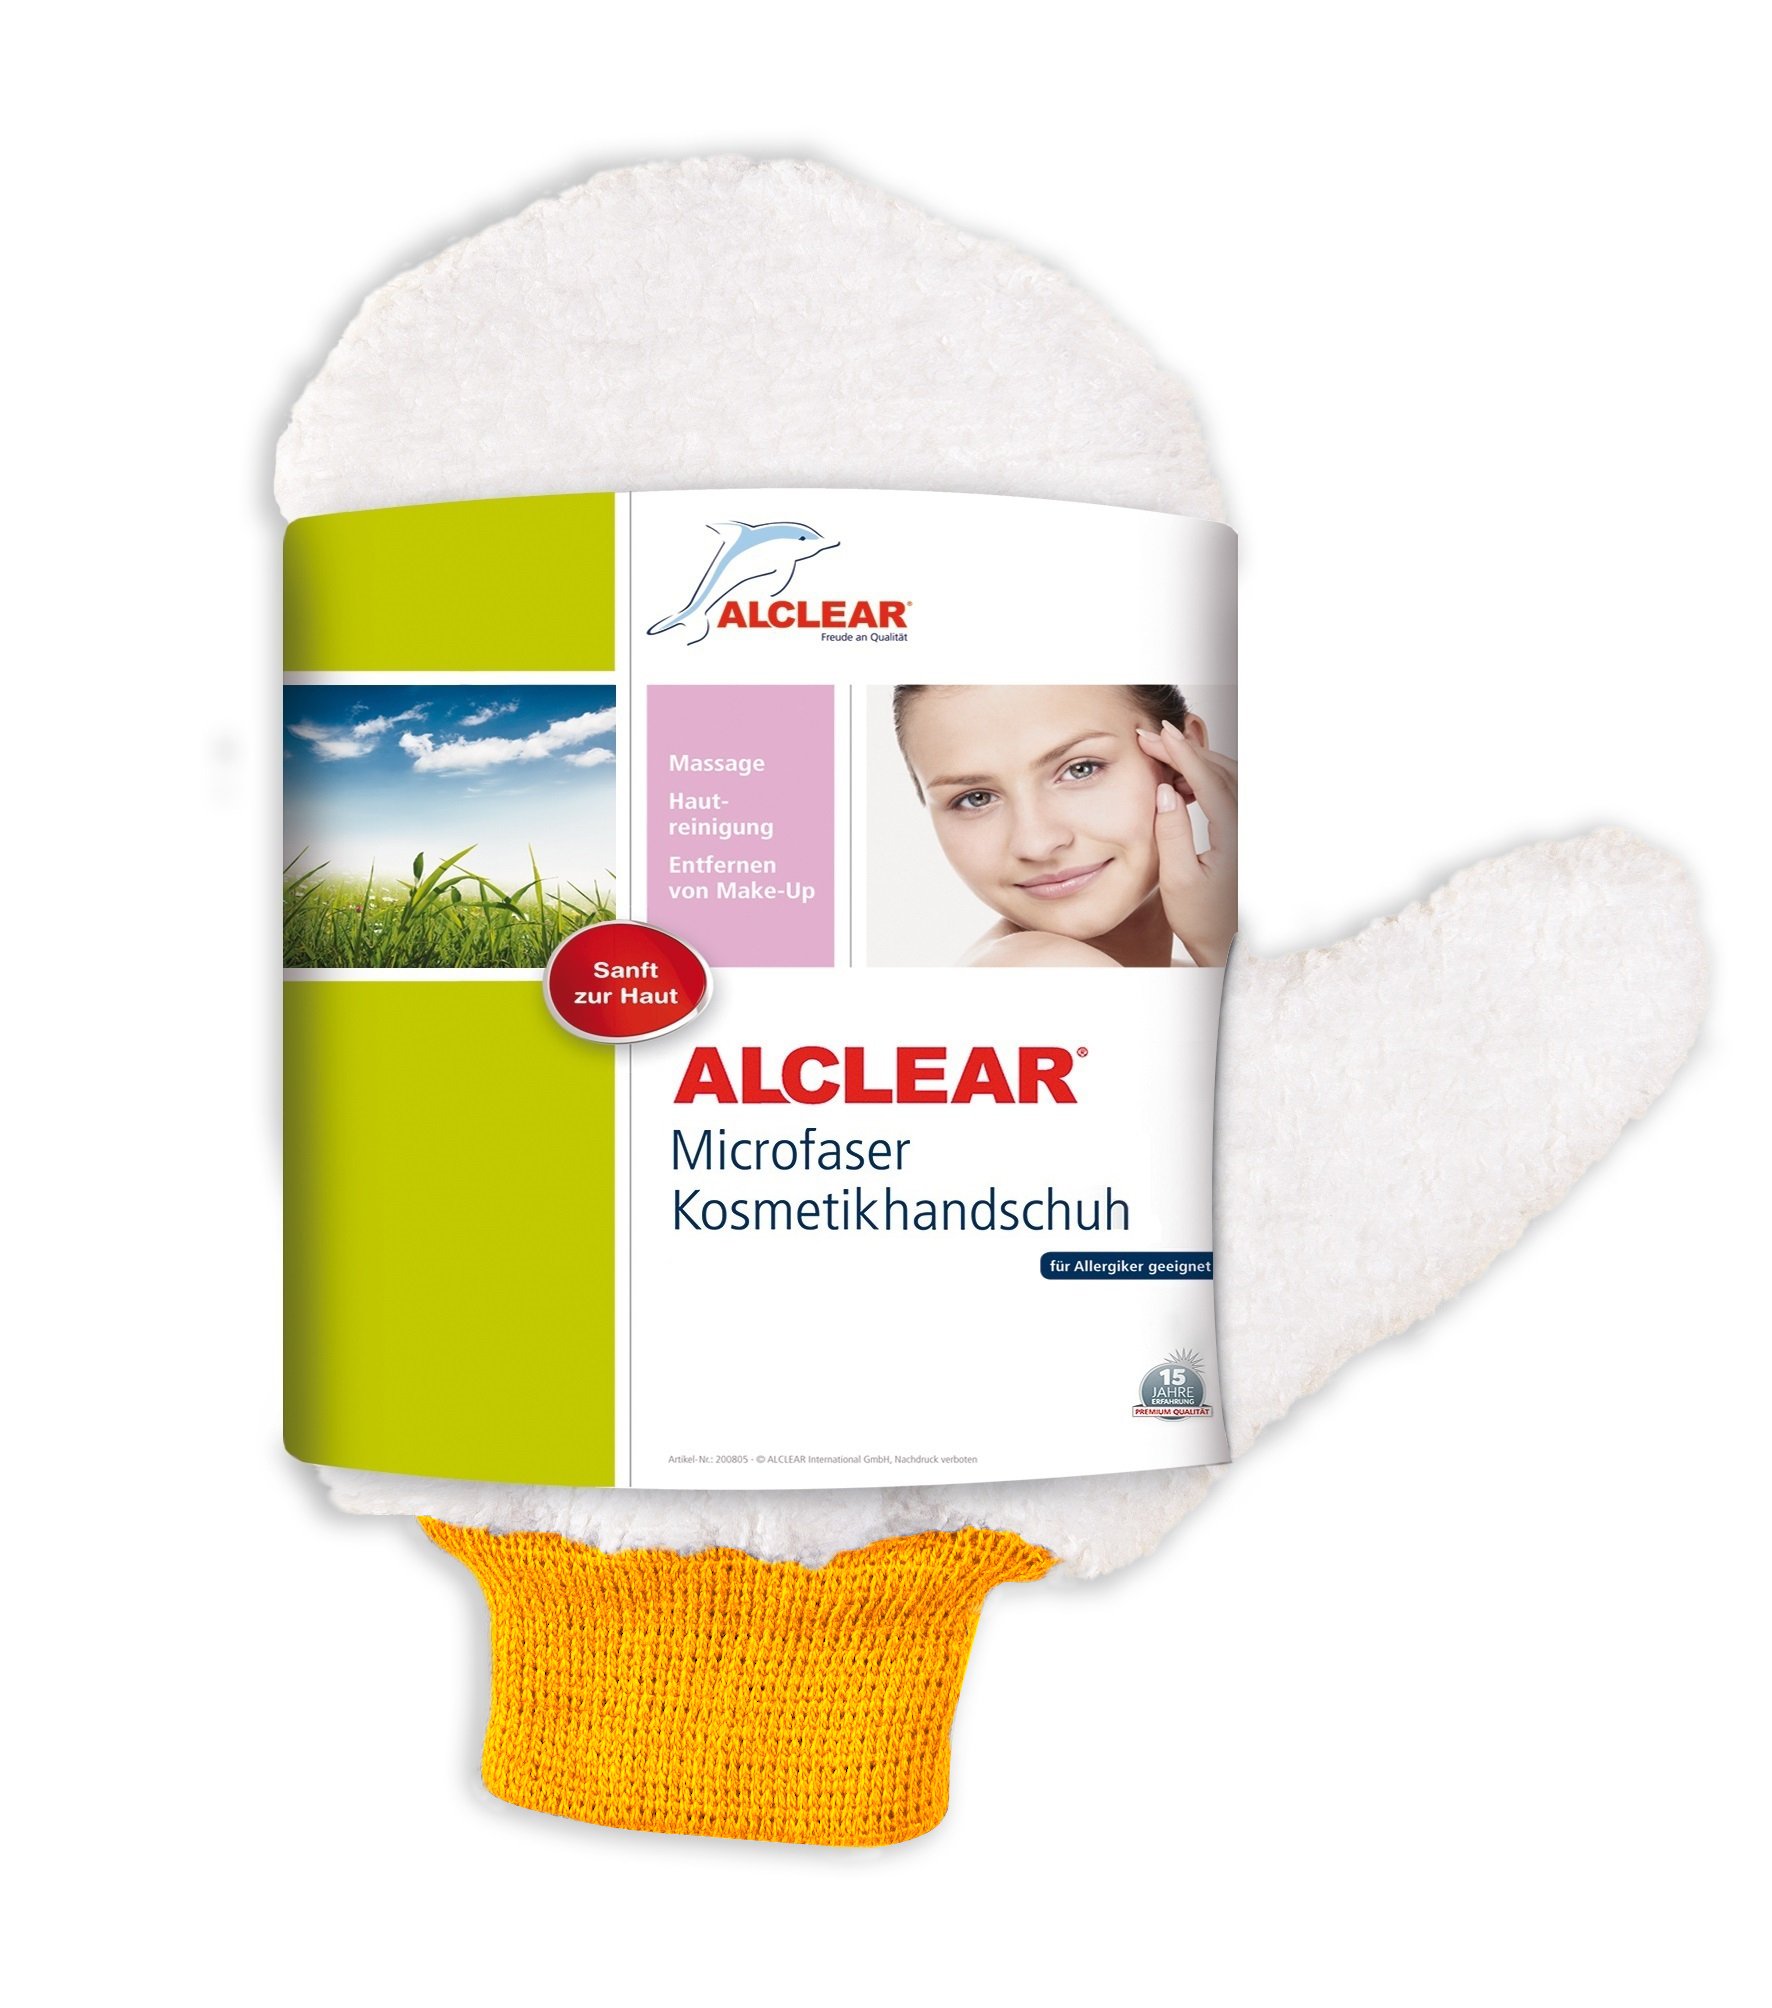 ALCLEAR 200805 Kosmetikhandschuh aus Ultra-Microfaser: Abschminken, Massage bei weniger Hautirritationen, empfohlen für Allergiker, wie Abschminkpad, sanfter als Gesichtswasser; Gesichtstuch, Kosmetiktuch, Kosmetikpad, Make-Up von ALCLEAR